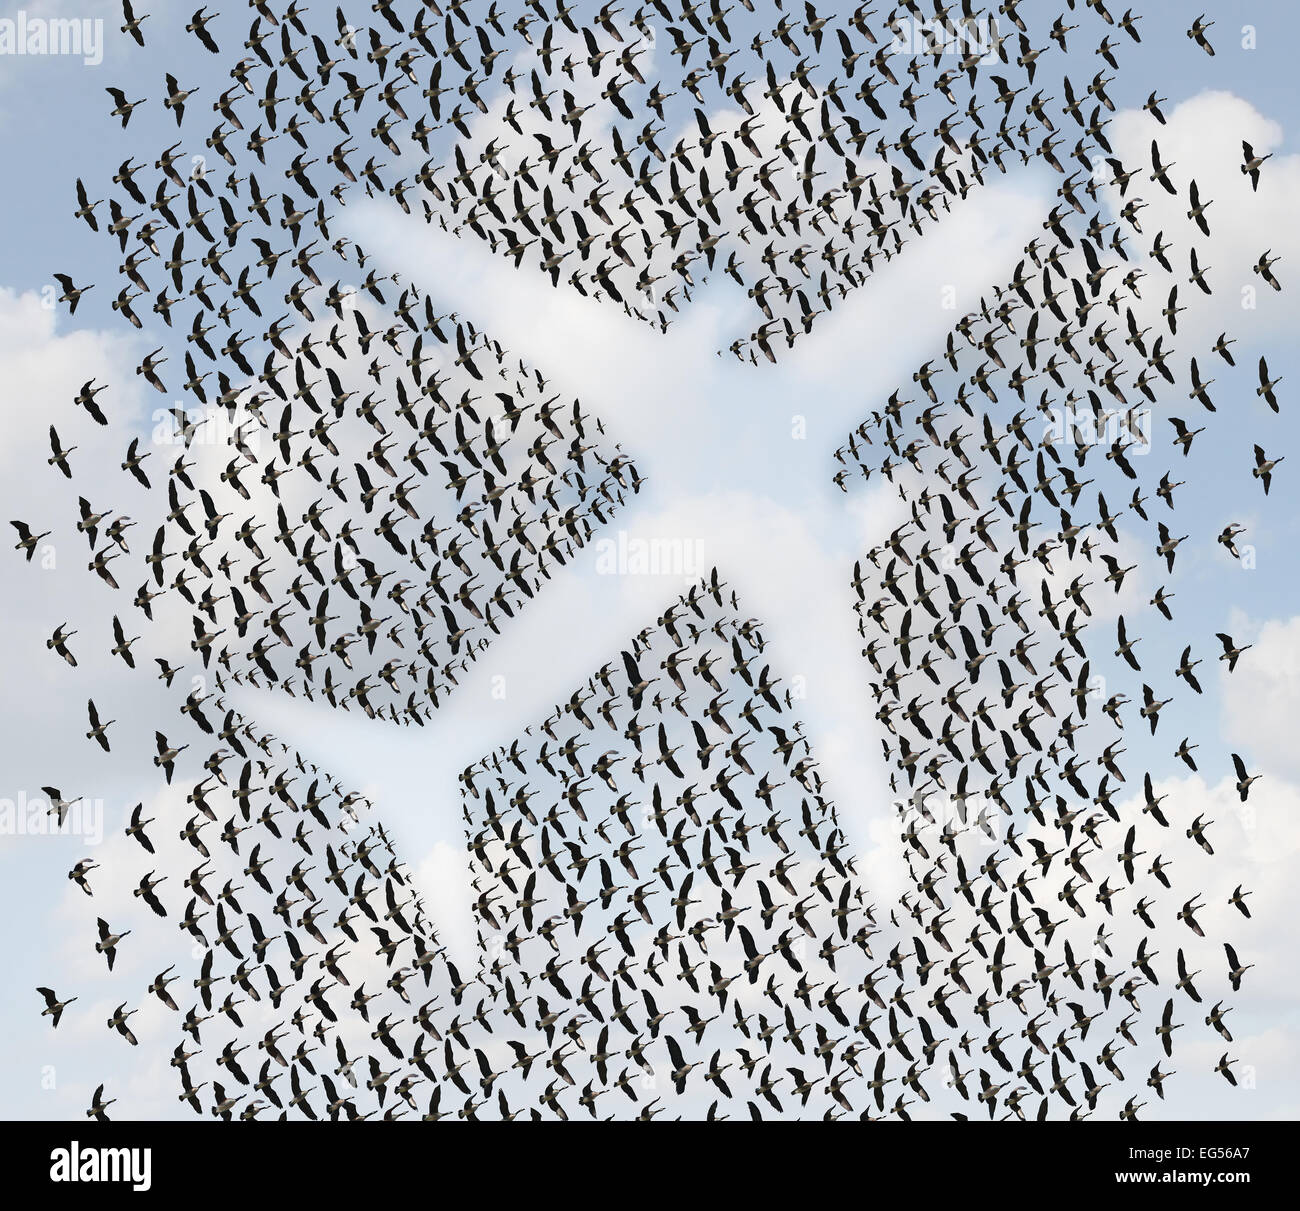 Billet d'air concept comme un troupeau d'oiseaux ou d'oies organisée en la forme d'un avion de passagers comme un jet aviation transport et transport symbole. Banque D'Images